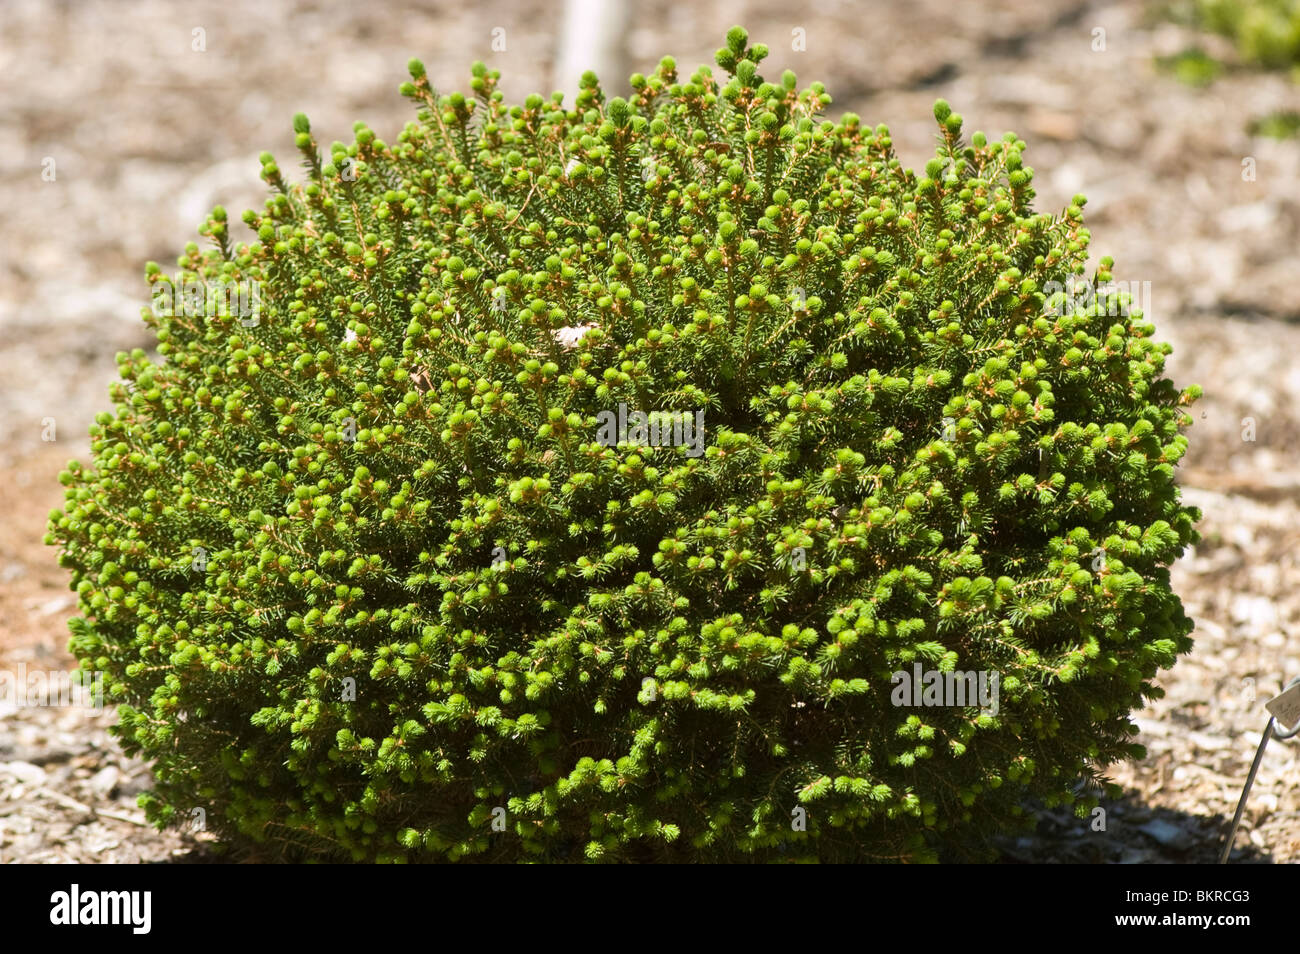 swierk pospolity, Picea abies var Hildberghausen, Pinaceae, Norway Spruce Stock Photo